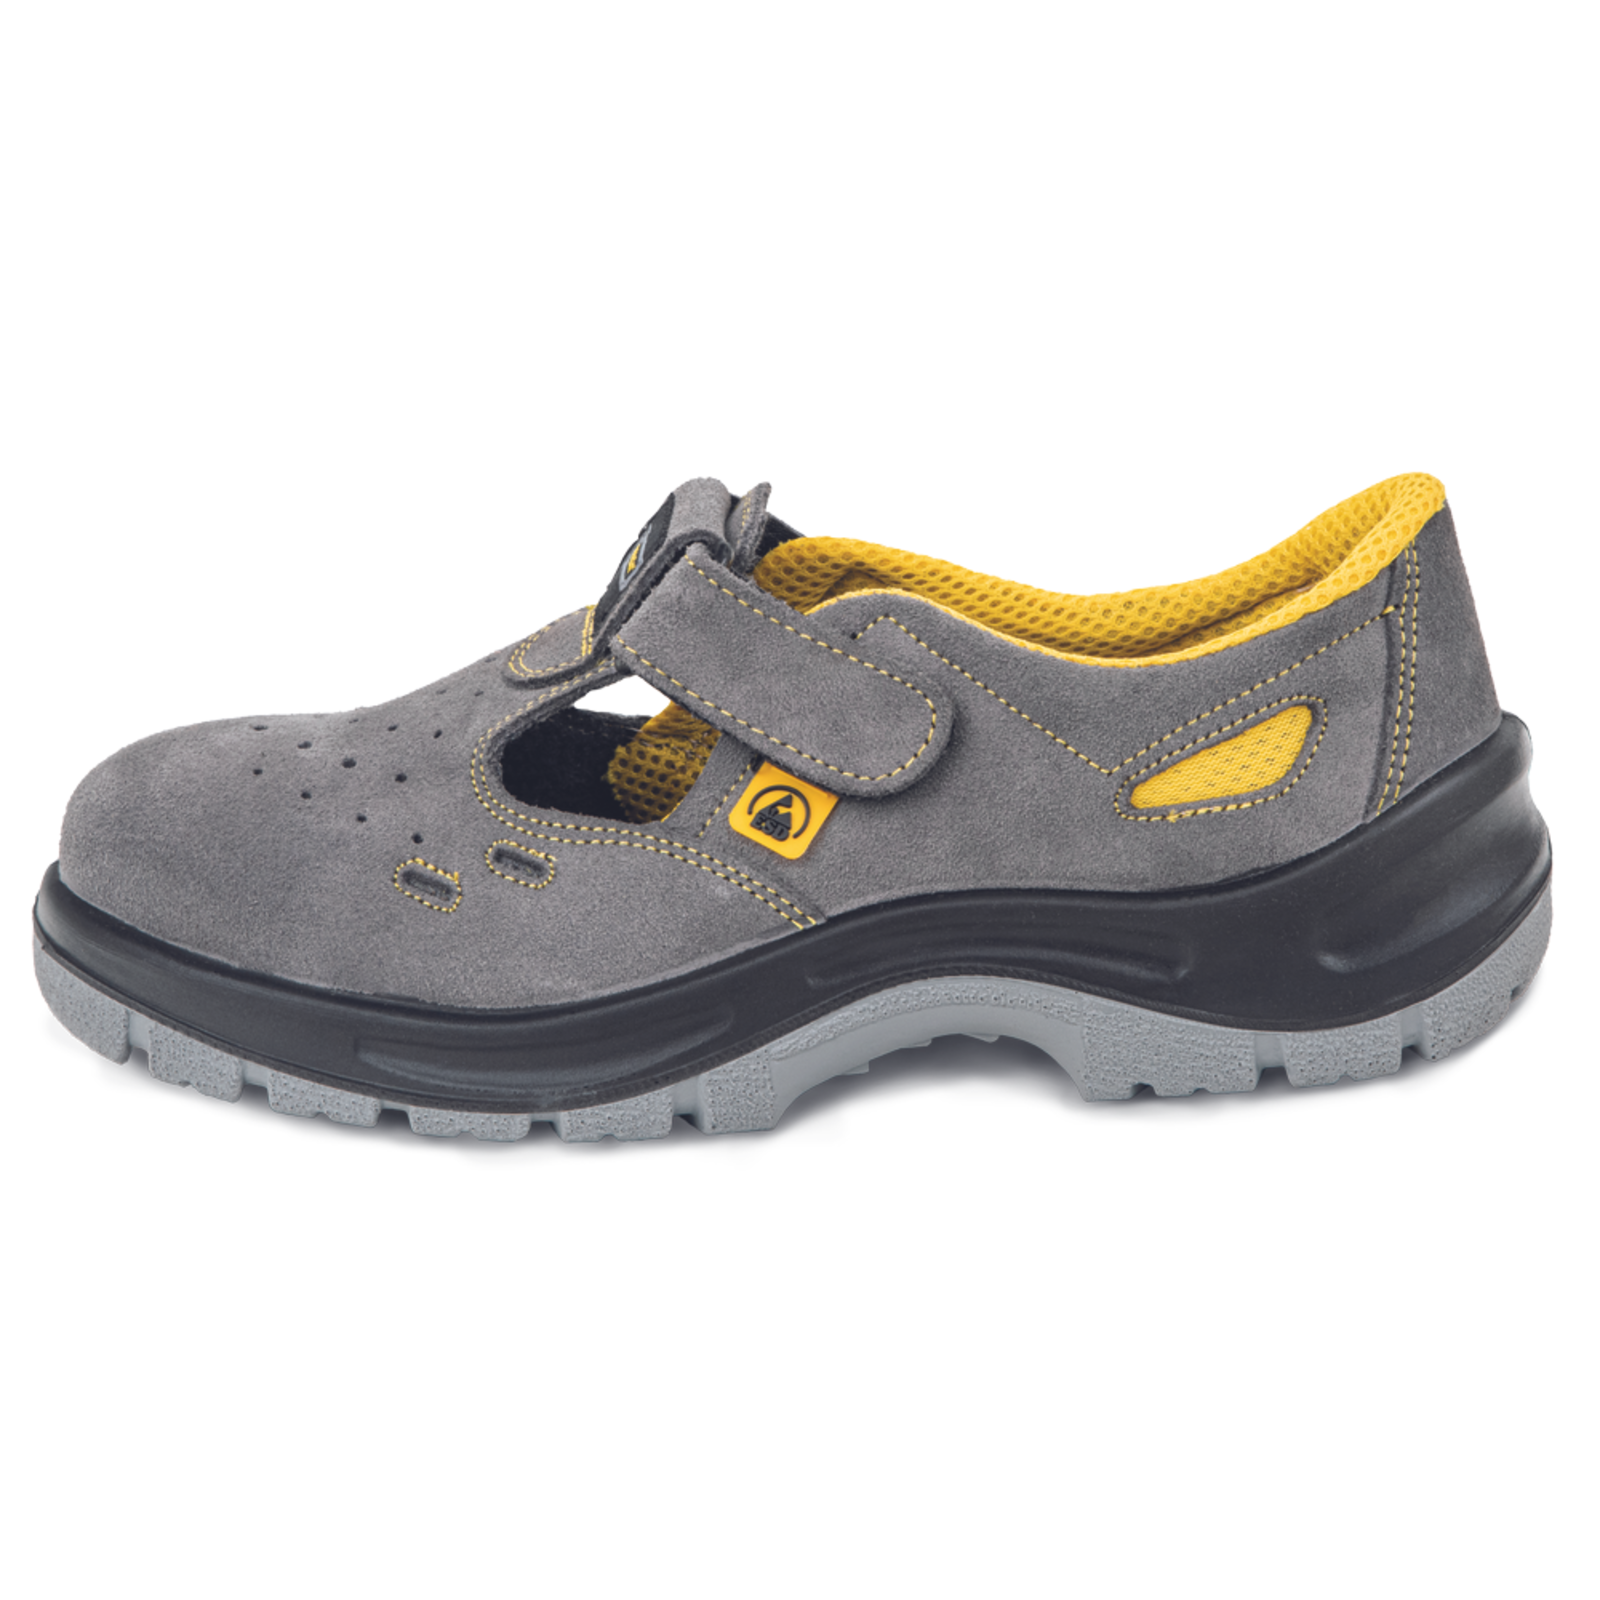 Pracovné bezpečnostné sandále Panda Selma MF ESD S1P SRC - veľkosť: 48, farba: sivá/žltá